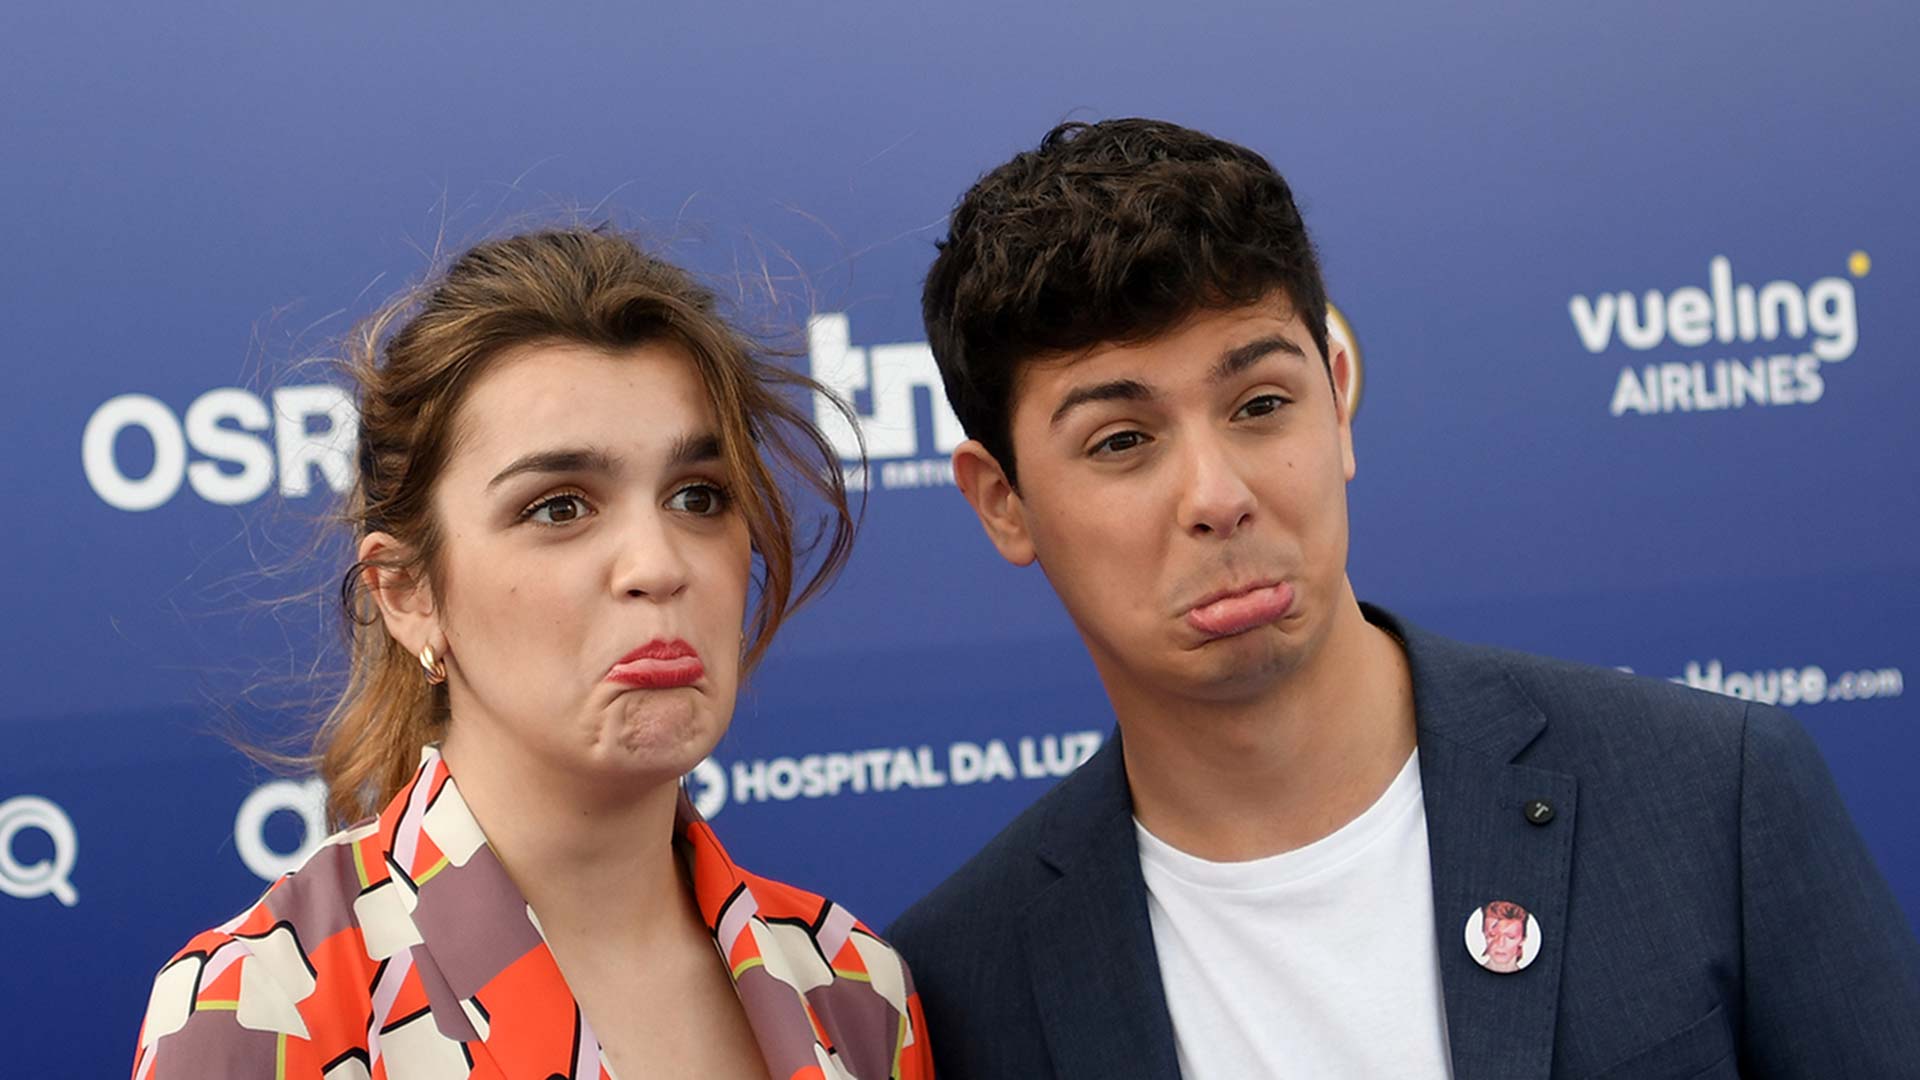 Alfred y Amaia, la pareja de Eurovisión que engancha en esta ‘España de mierda’